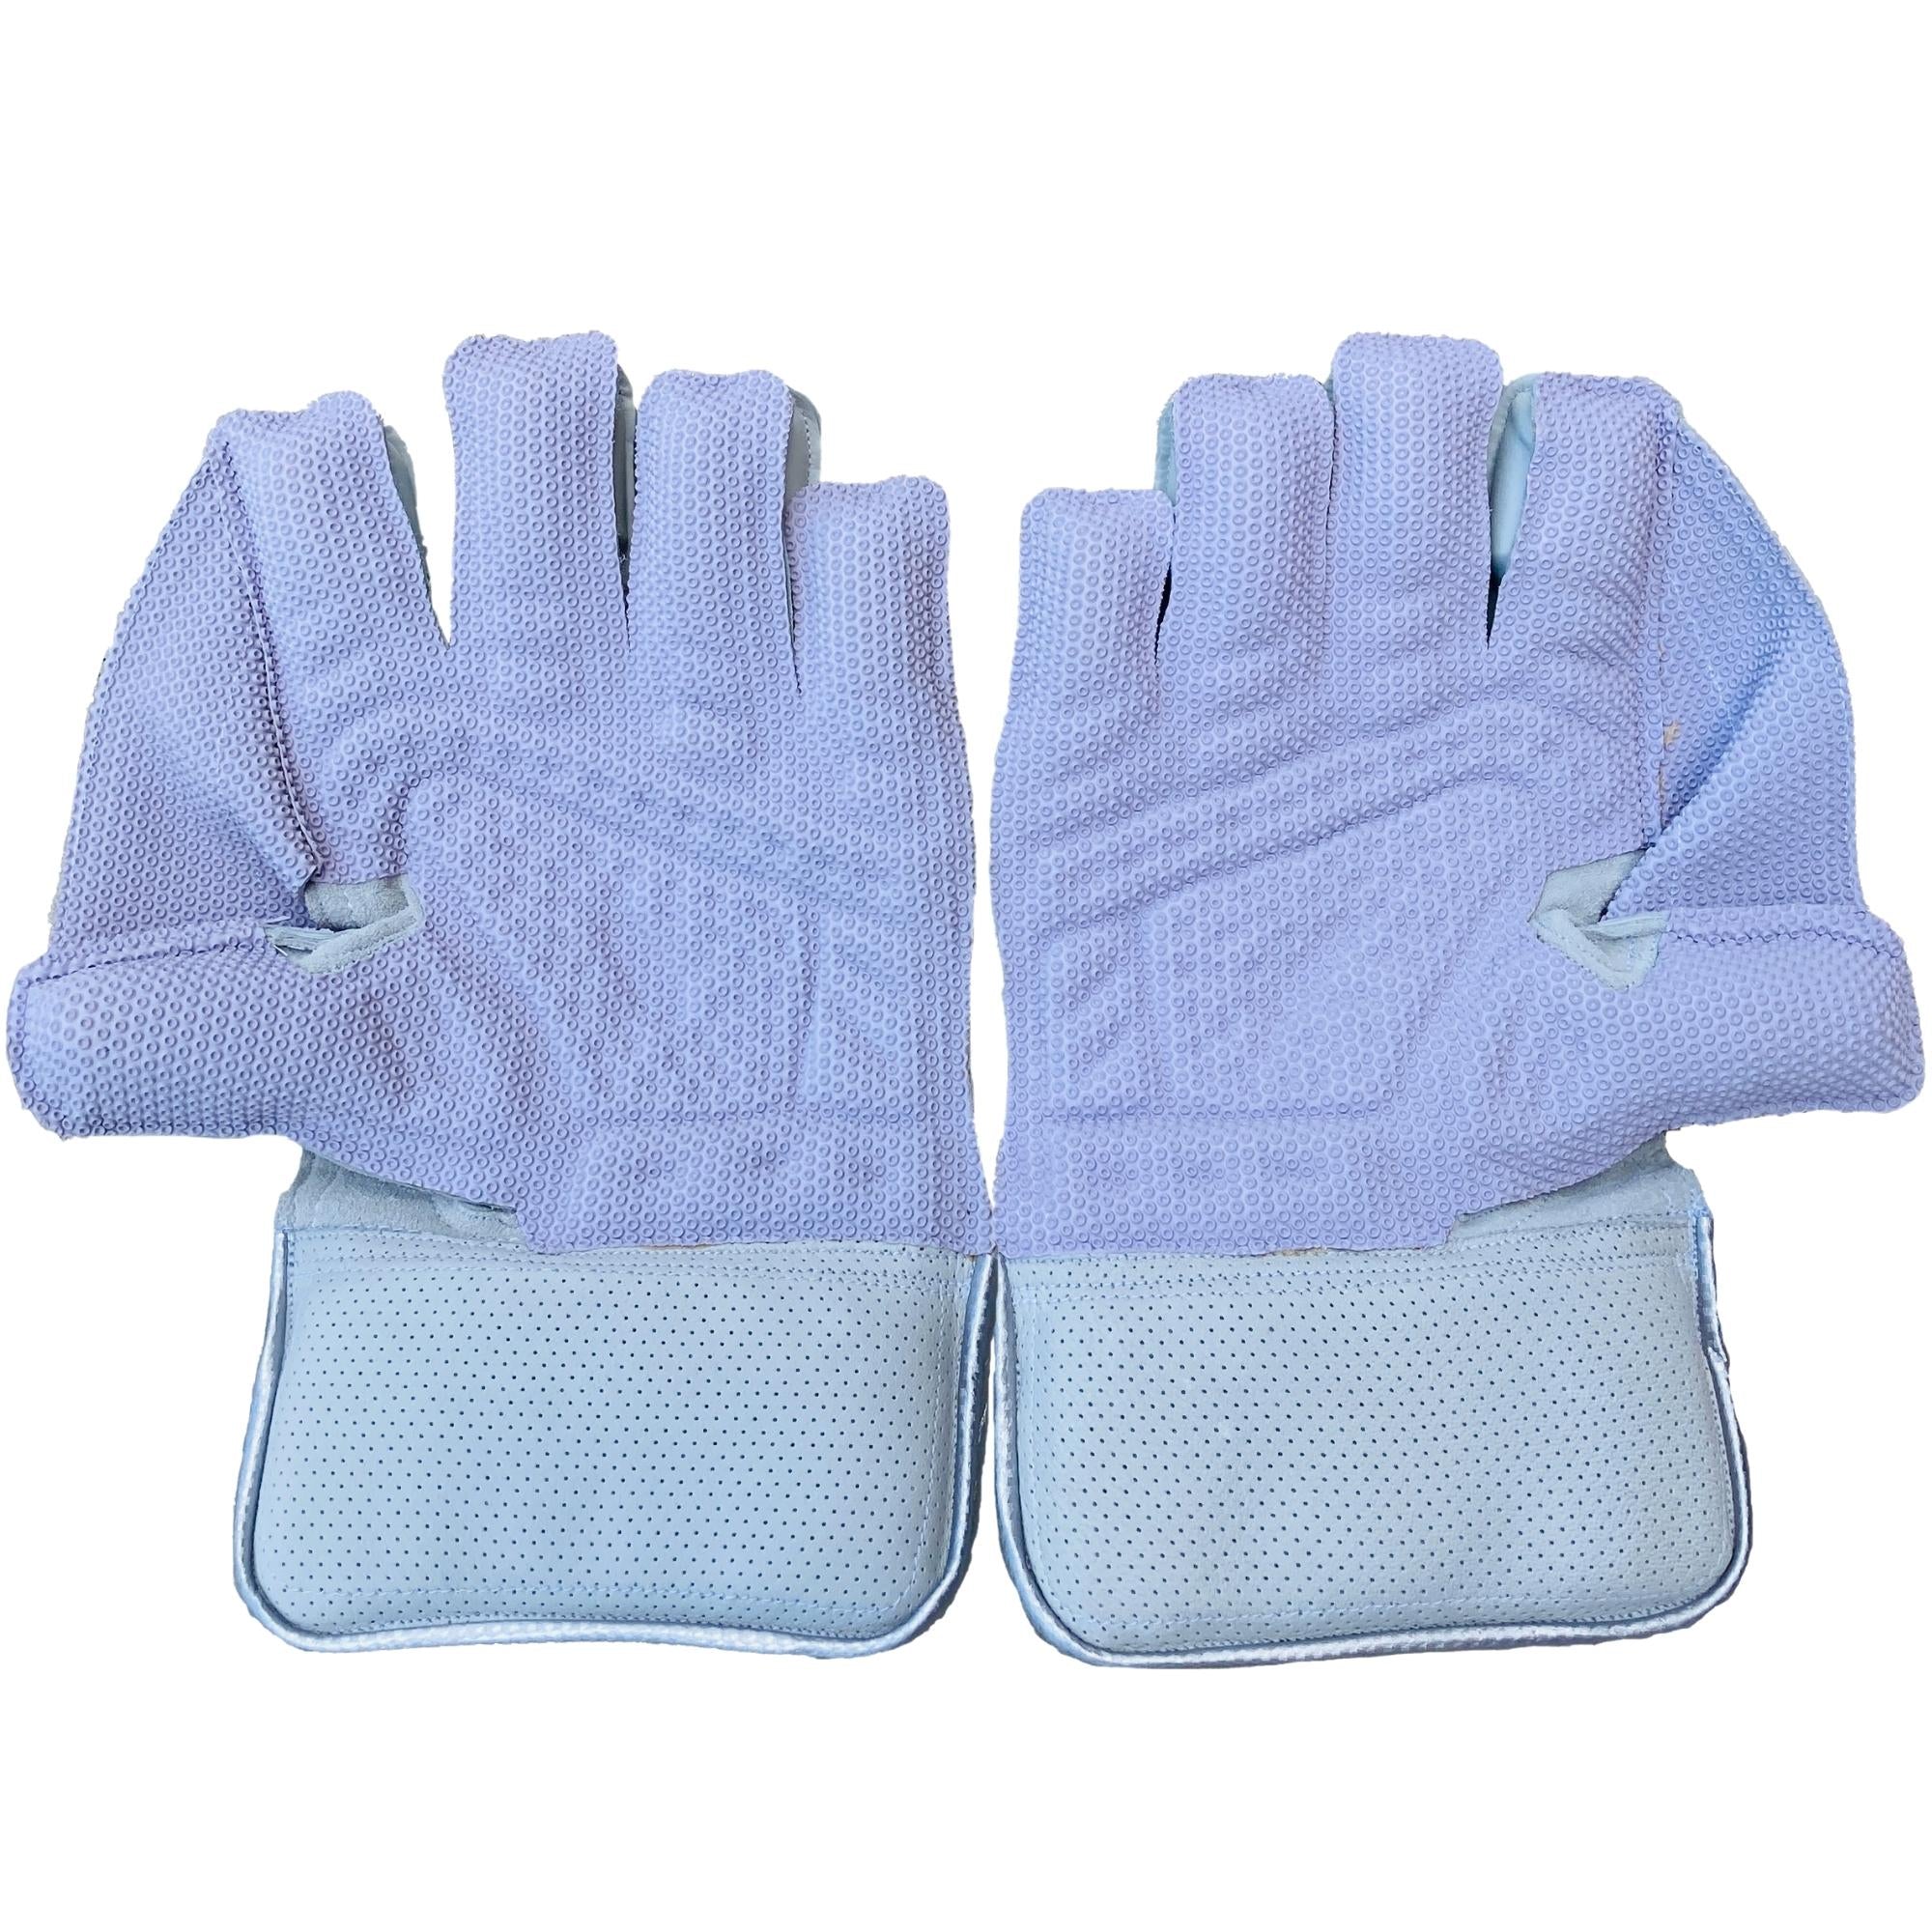 Zee Sports Wicket Keeping Gloves | Zee Sports White